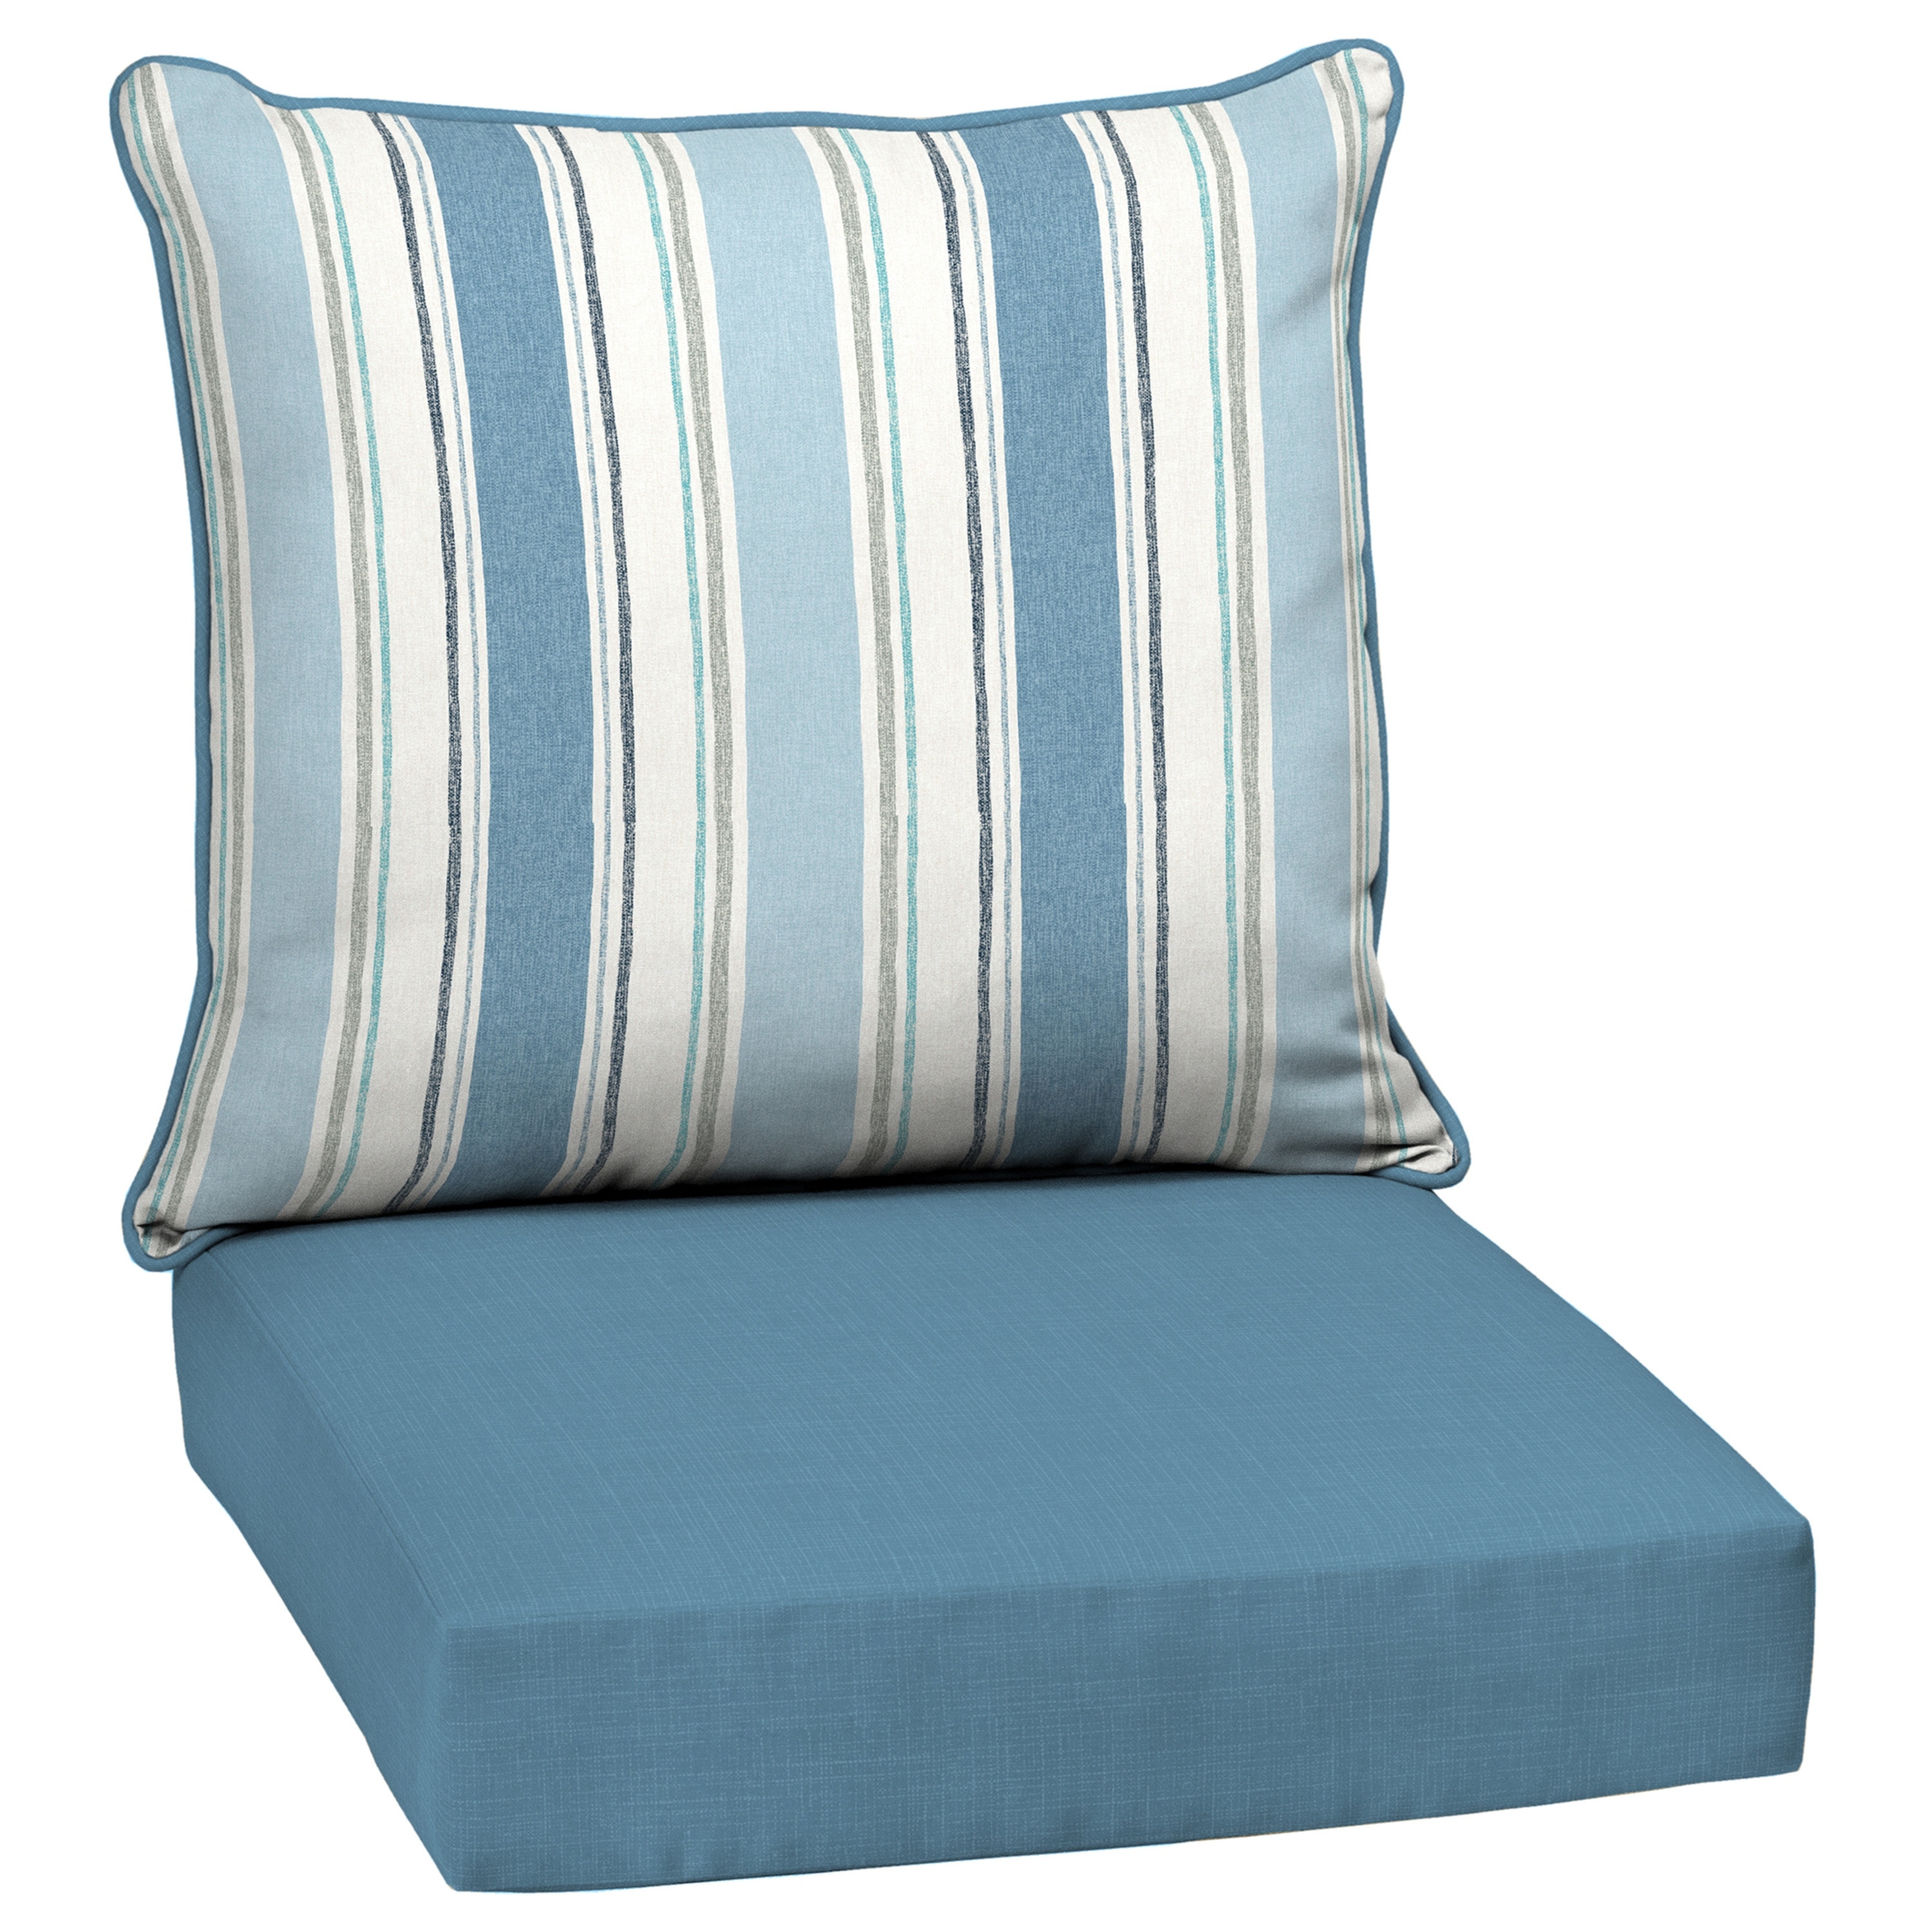 Arden Selections Oceantex Outdoor Toss Pillow 18 x 18, 2 Pack 18 x 18, Ocean Blue Stripe